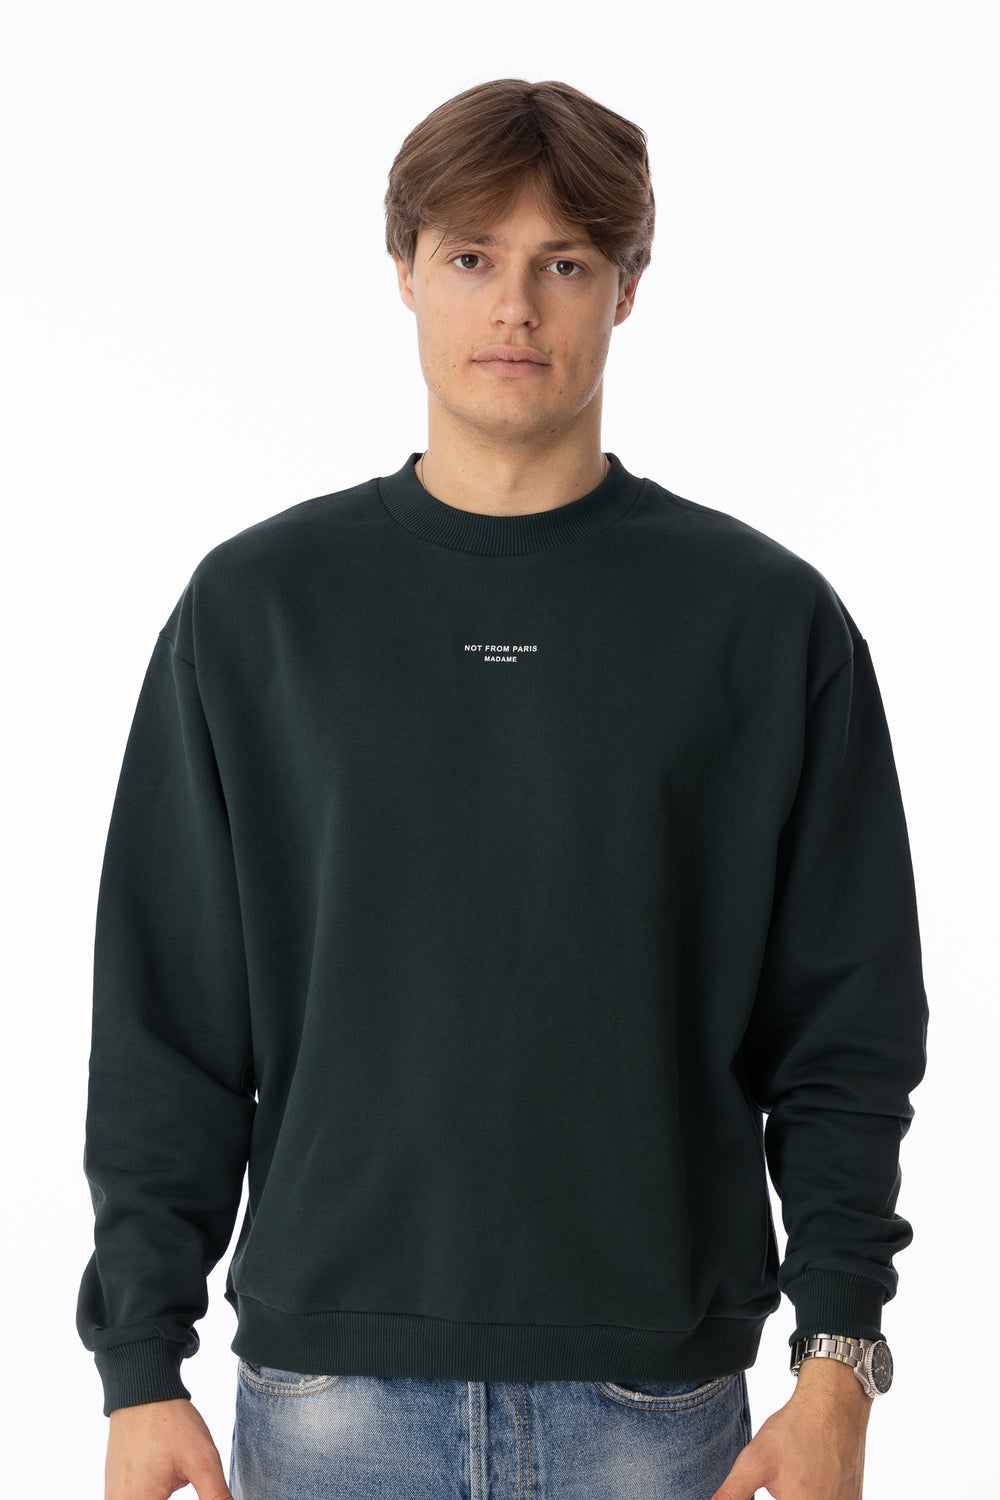 Le Sweatshirt Classique NFPM Dark Green-Genser-Bogartstore